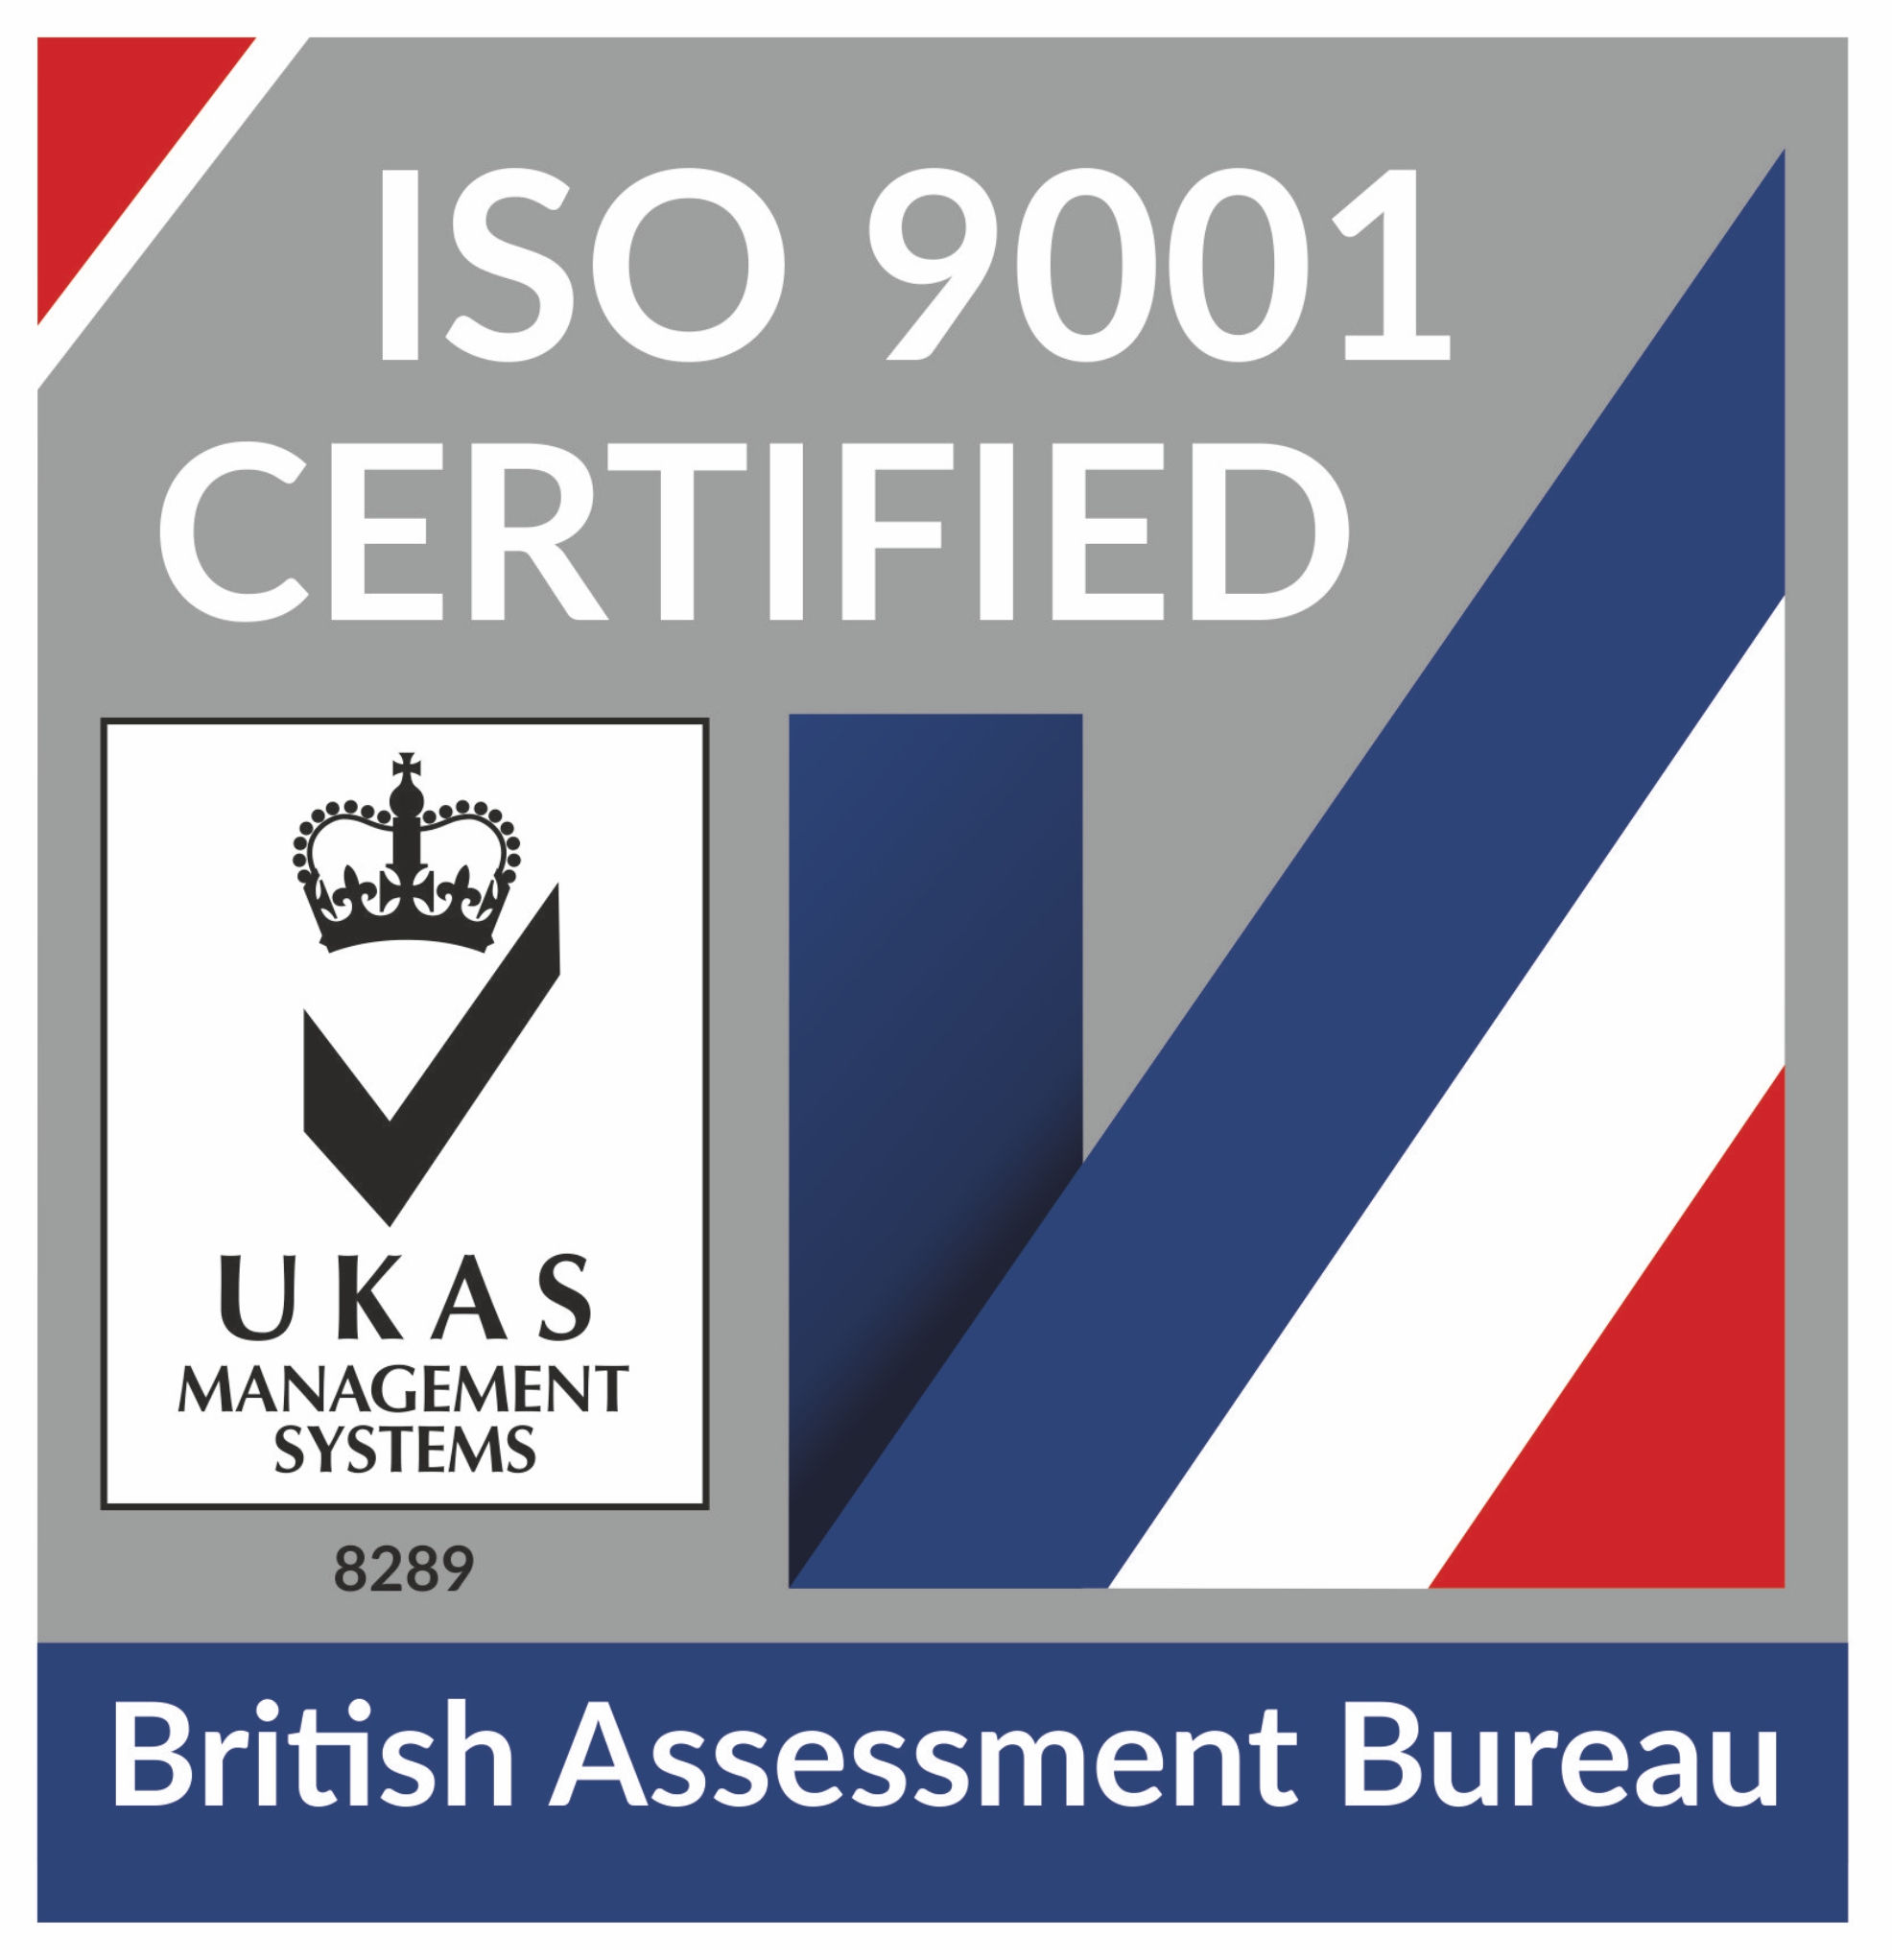 The British assessment bureau ISO9001